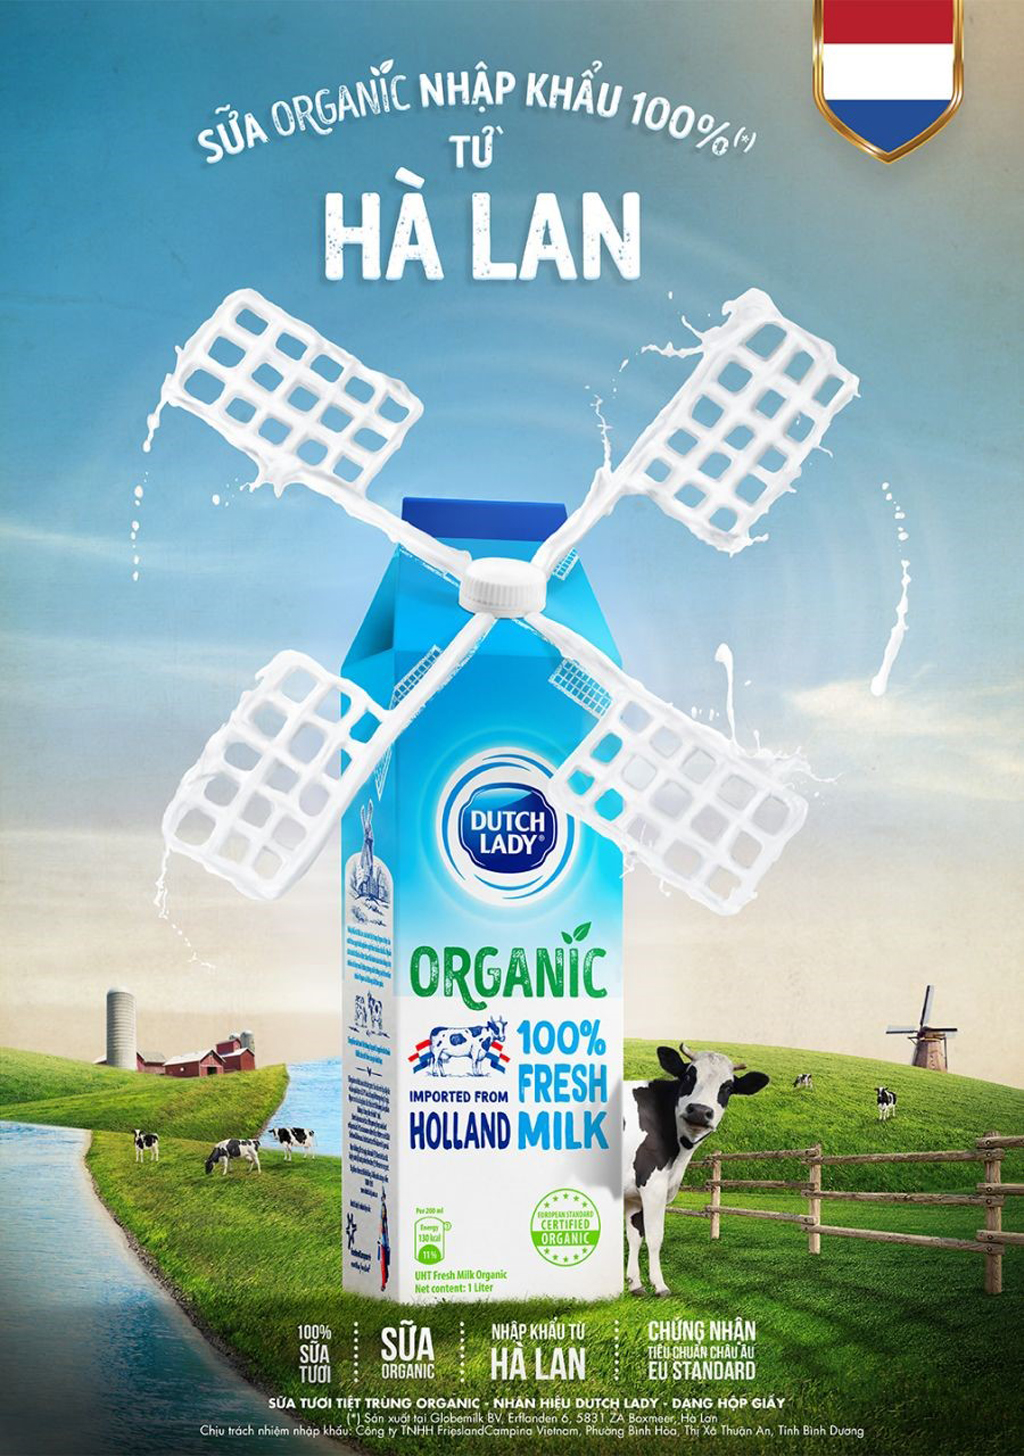 Sữa hữu cơ Cô Gái Hà Lan được nhập khẩu 100% từ Hà Lan, mang đến dòng sữa tươi chuẩn Hà Lan